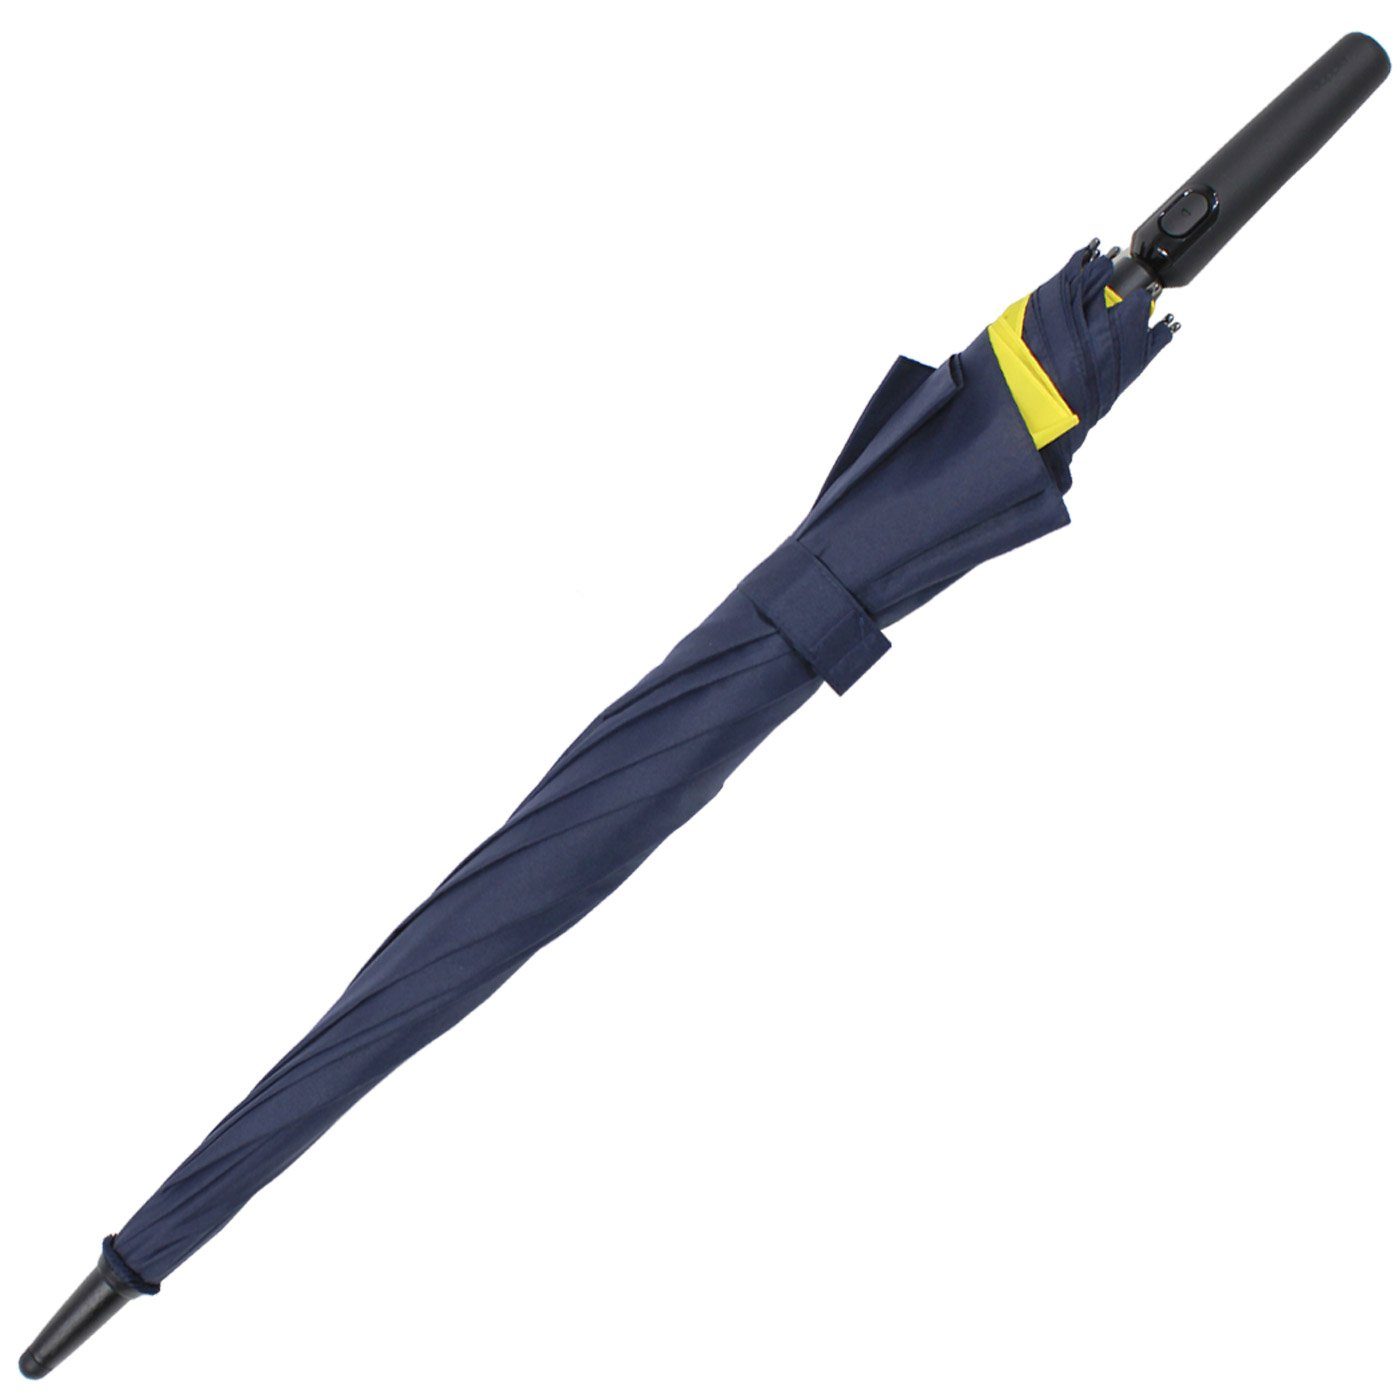 beim Move doppler® vergrößert to navyblau-gelb mehr mit Öffnen - Fiberglas vor Regen Schutz sich Auf-Automatik Langregenschirm für XL,